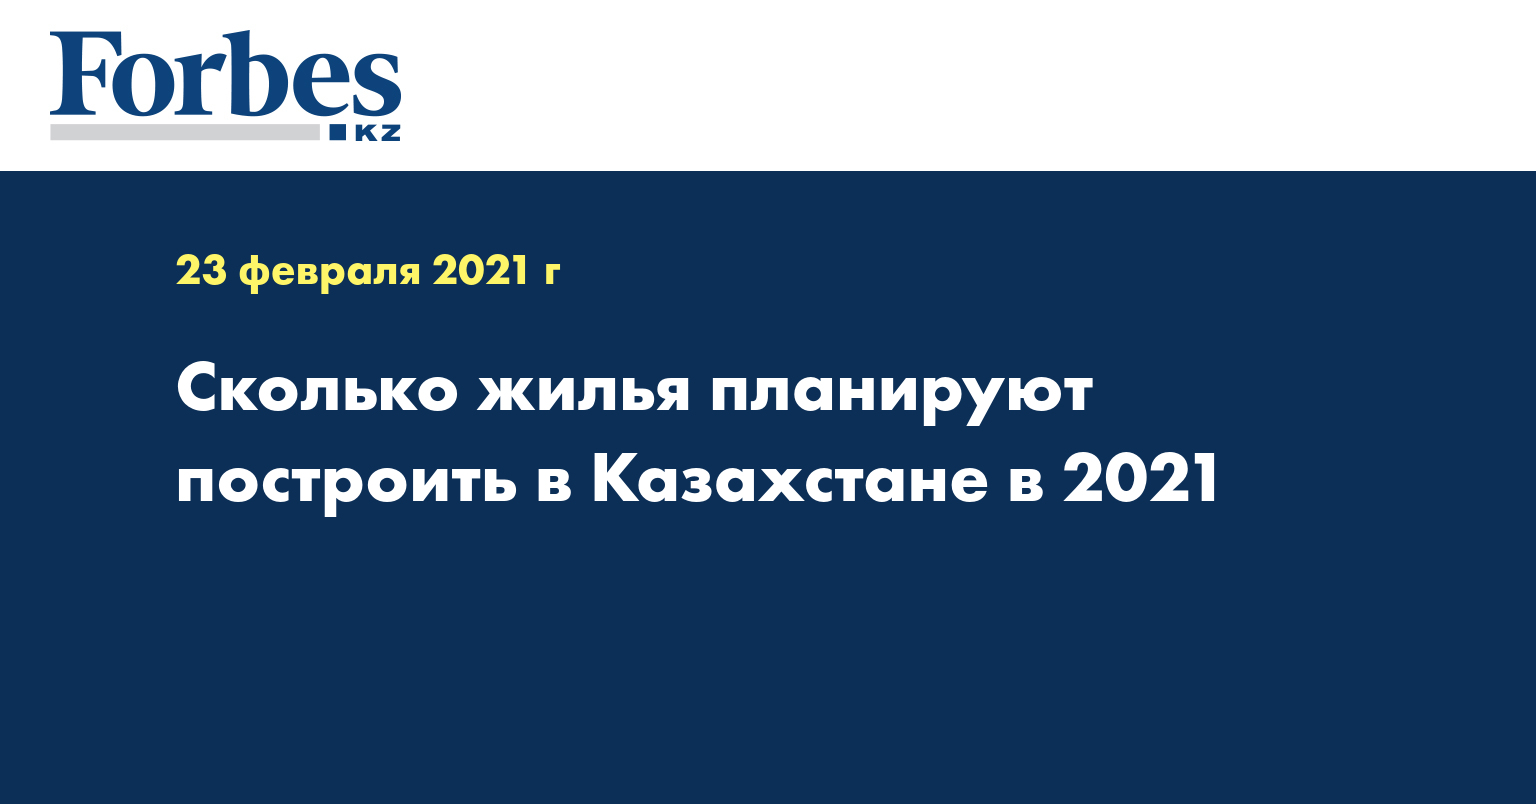 Сколько жилья планируют построить в Казахстане в 2021 